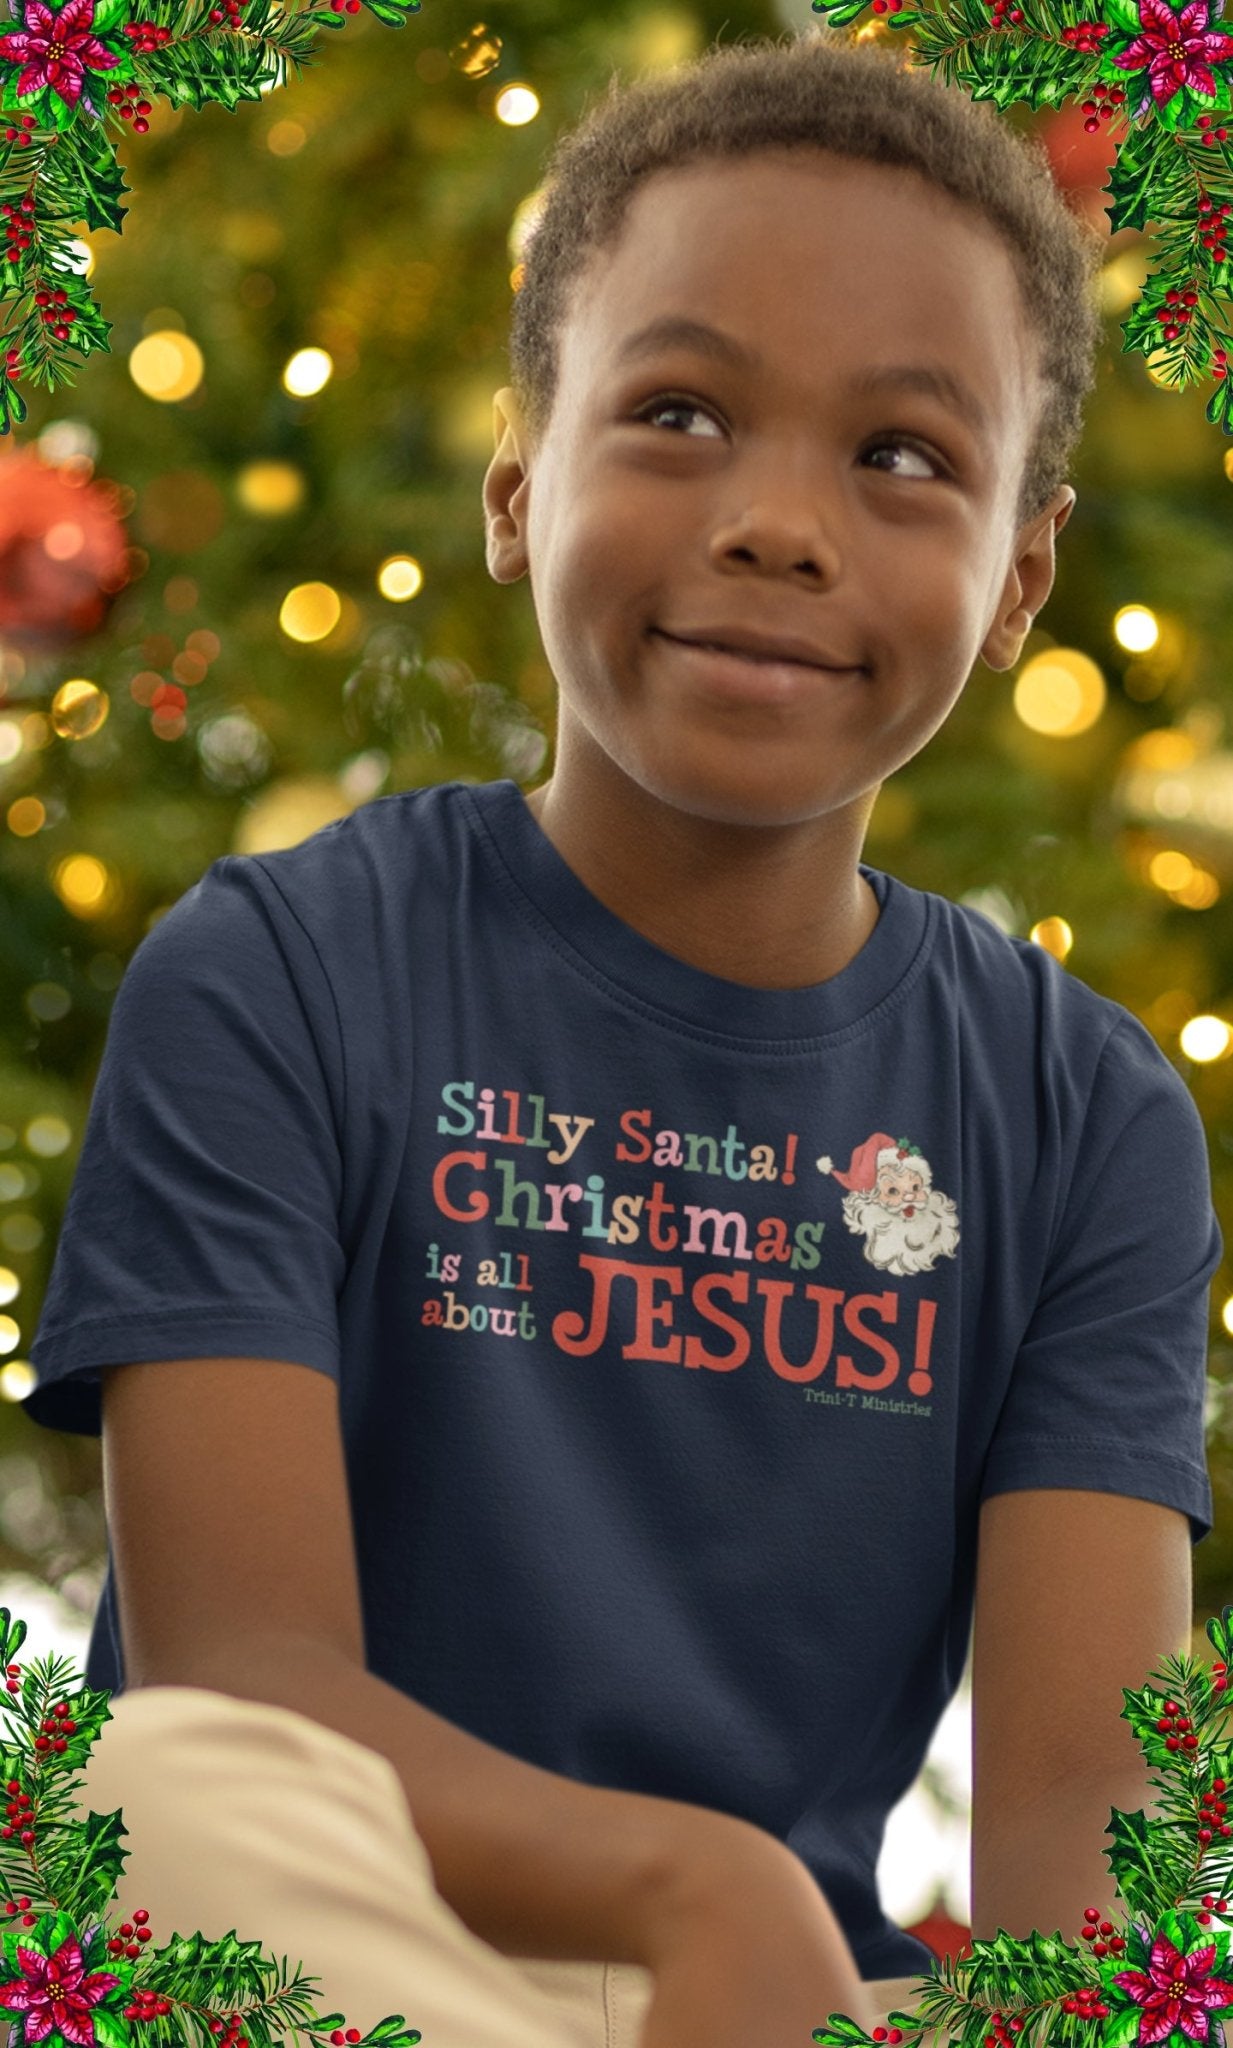 Silly Santa - Kid's T - Trini-T Ministries